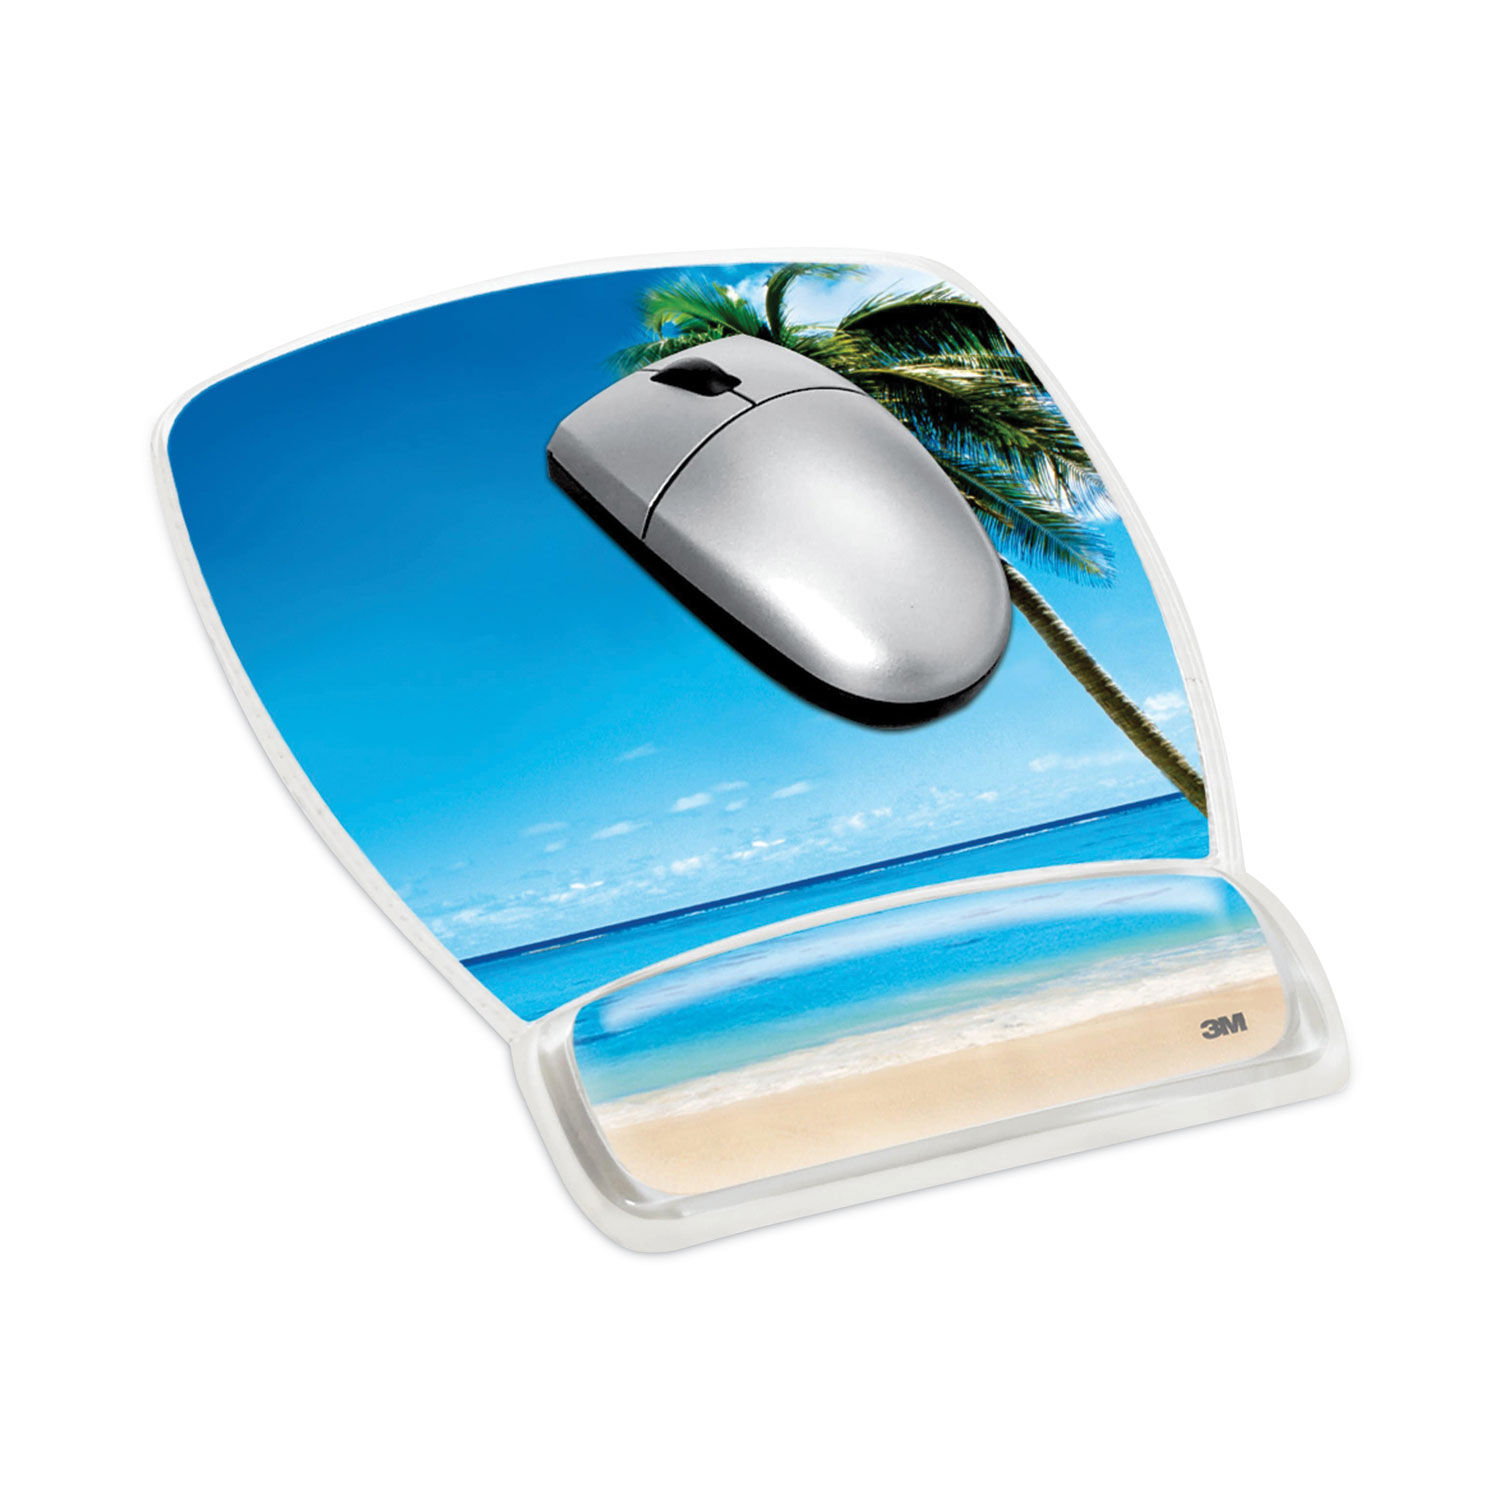 Gel Mouse Pad and Wrist rest. Speedlink Vellu Gel Mousepad. Clear Design.